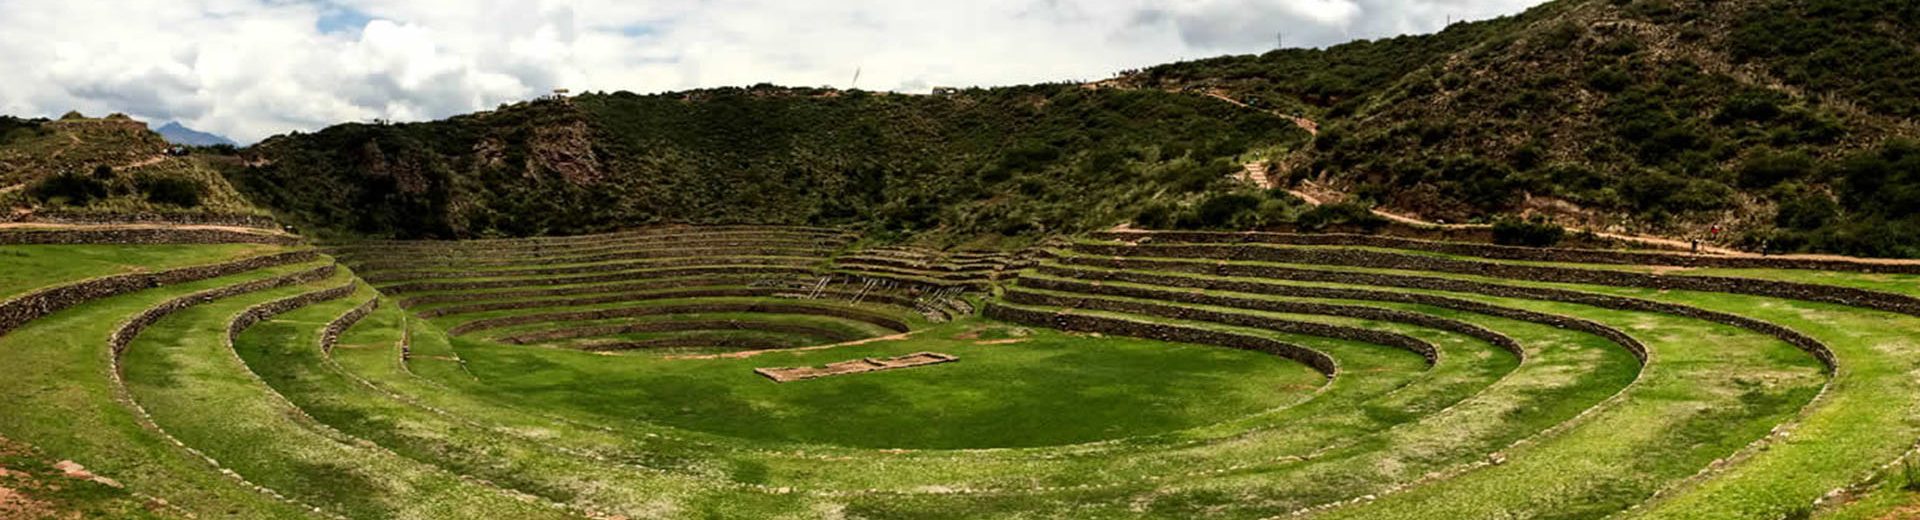 Sítios arqueológicos do Peru para você conhecer